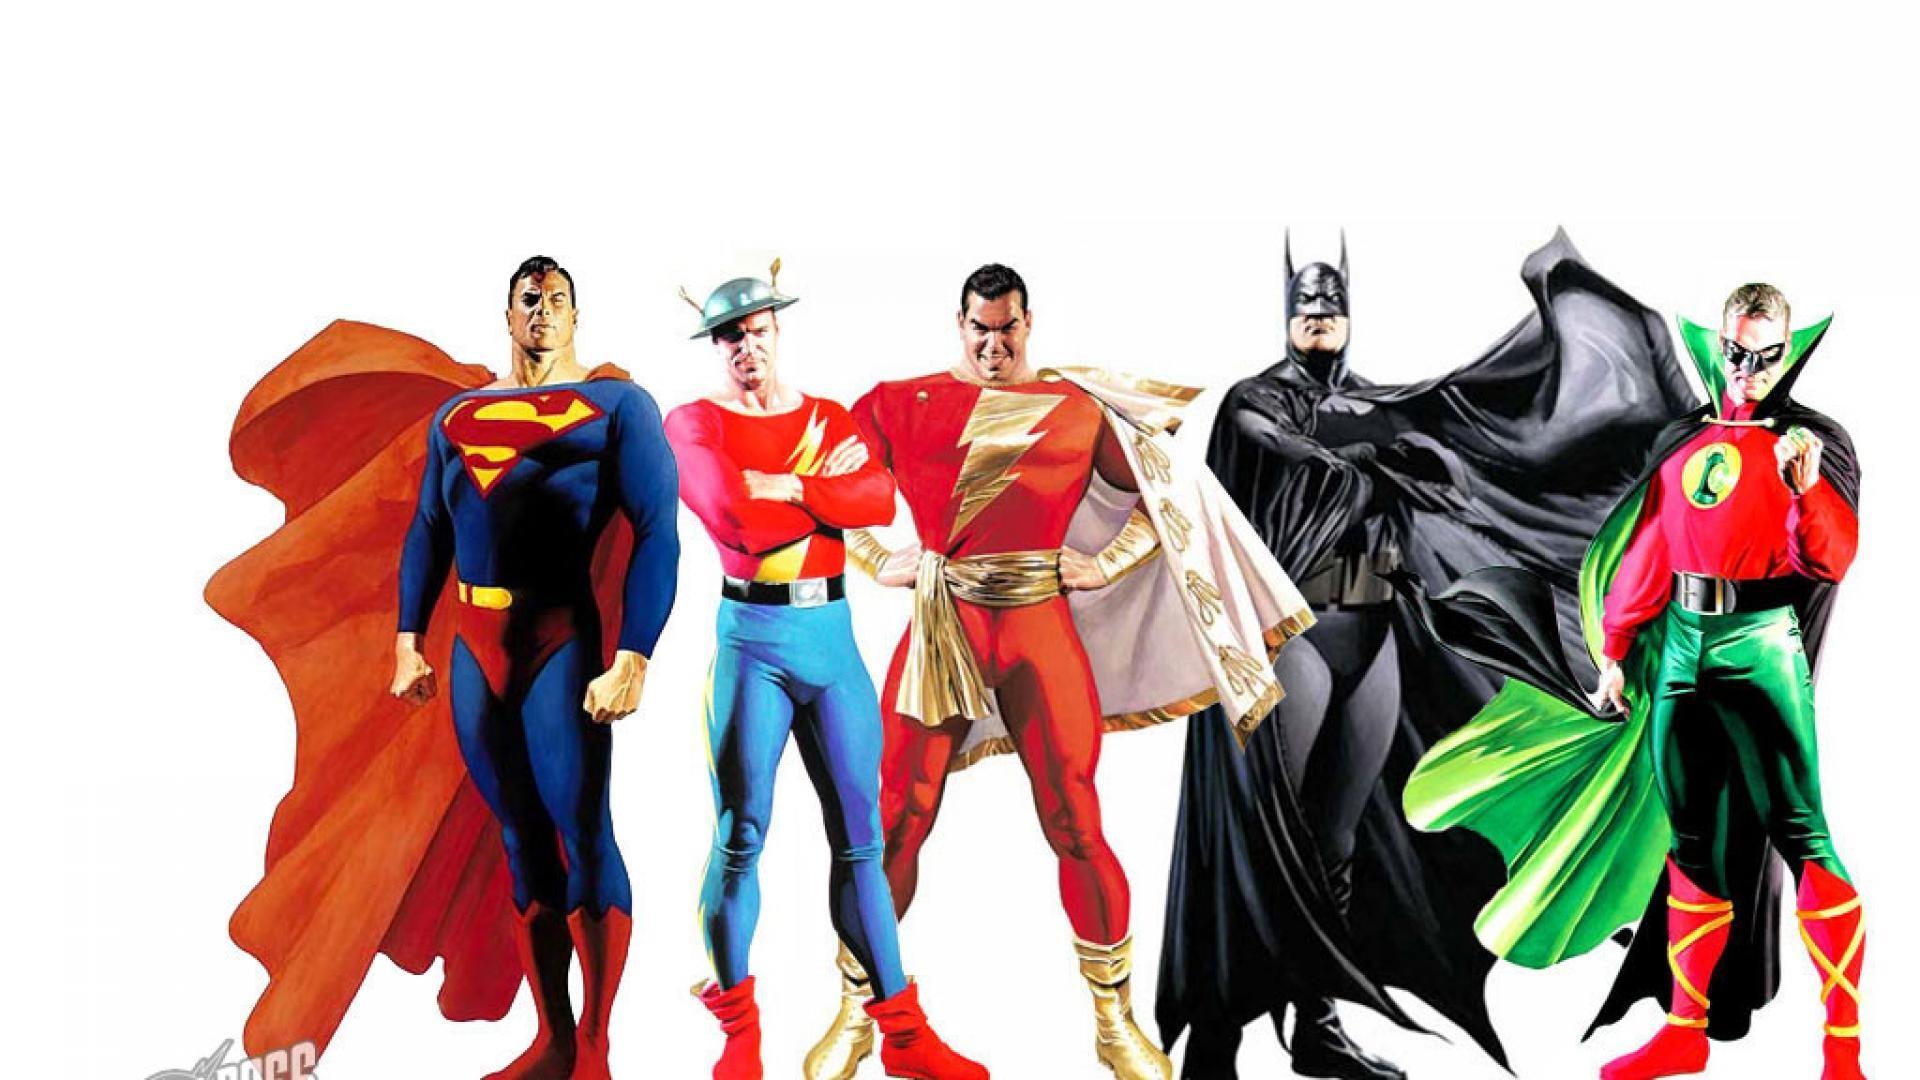 Res Ross Superman & Batman, HD Wallpaper